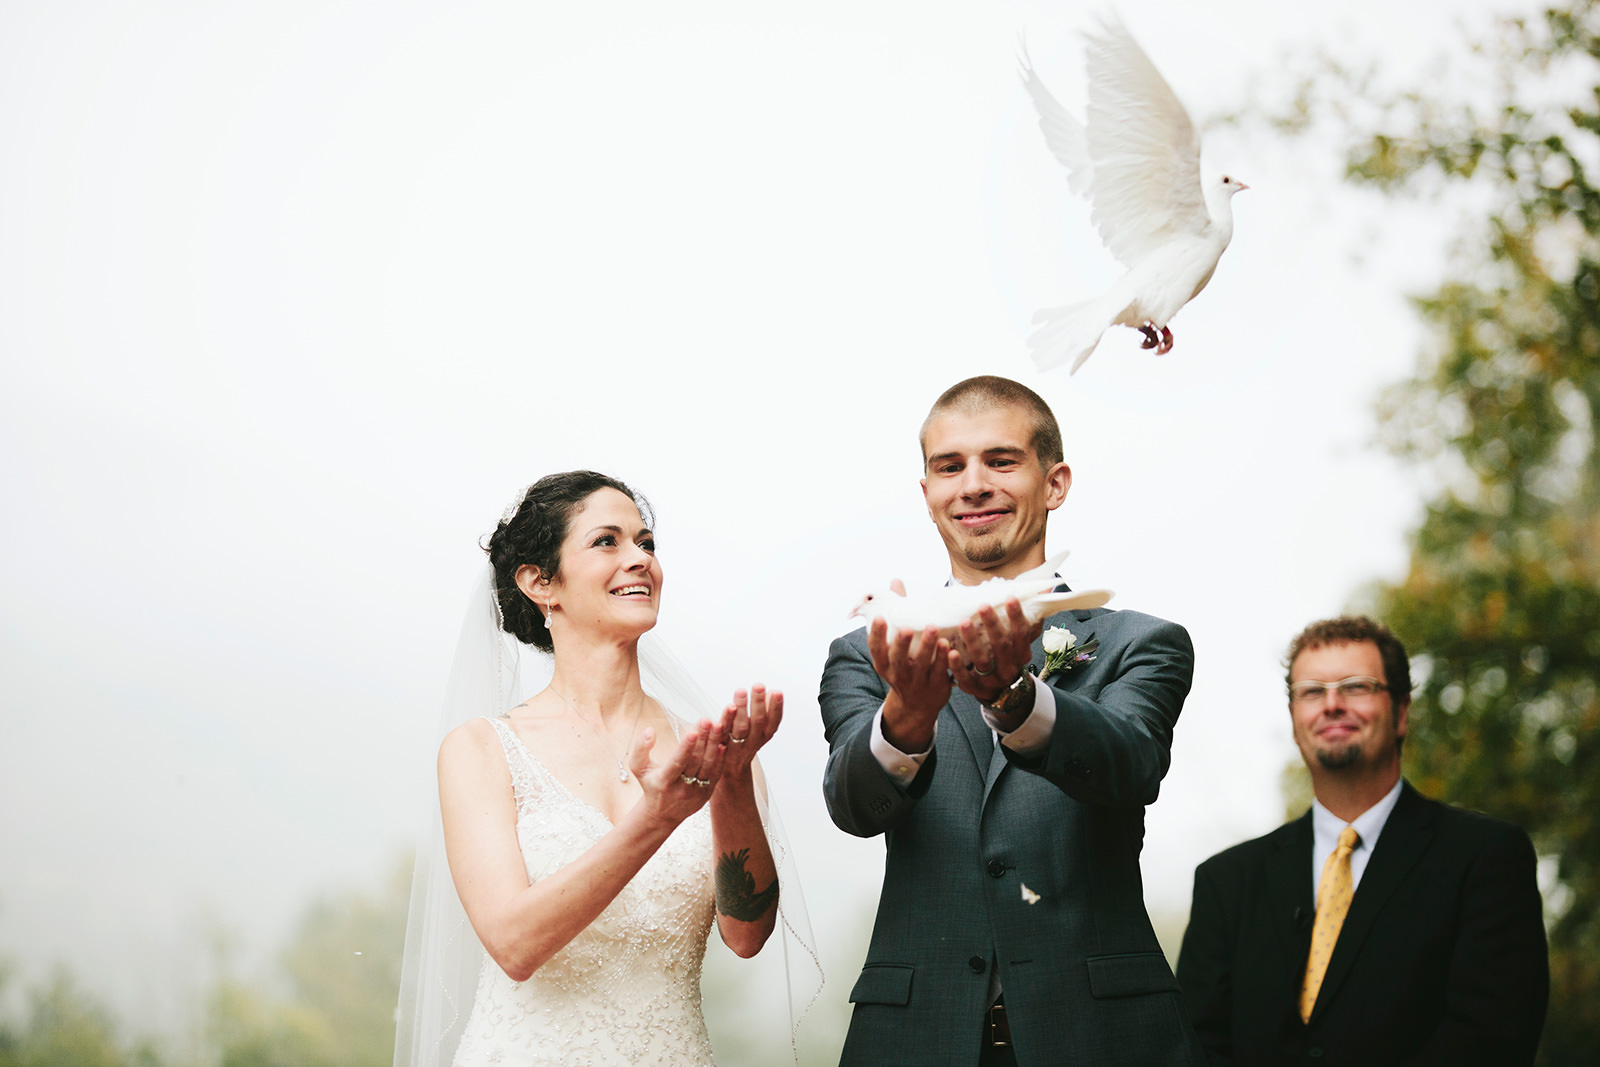 dove release wedding ceremony